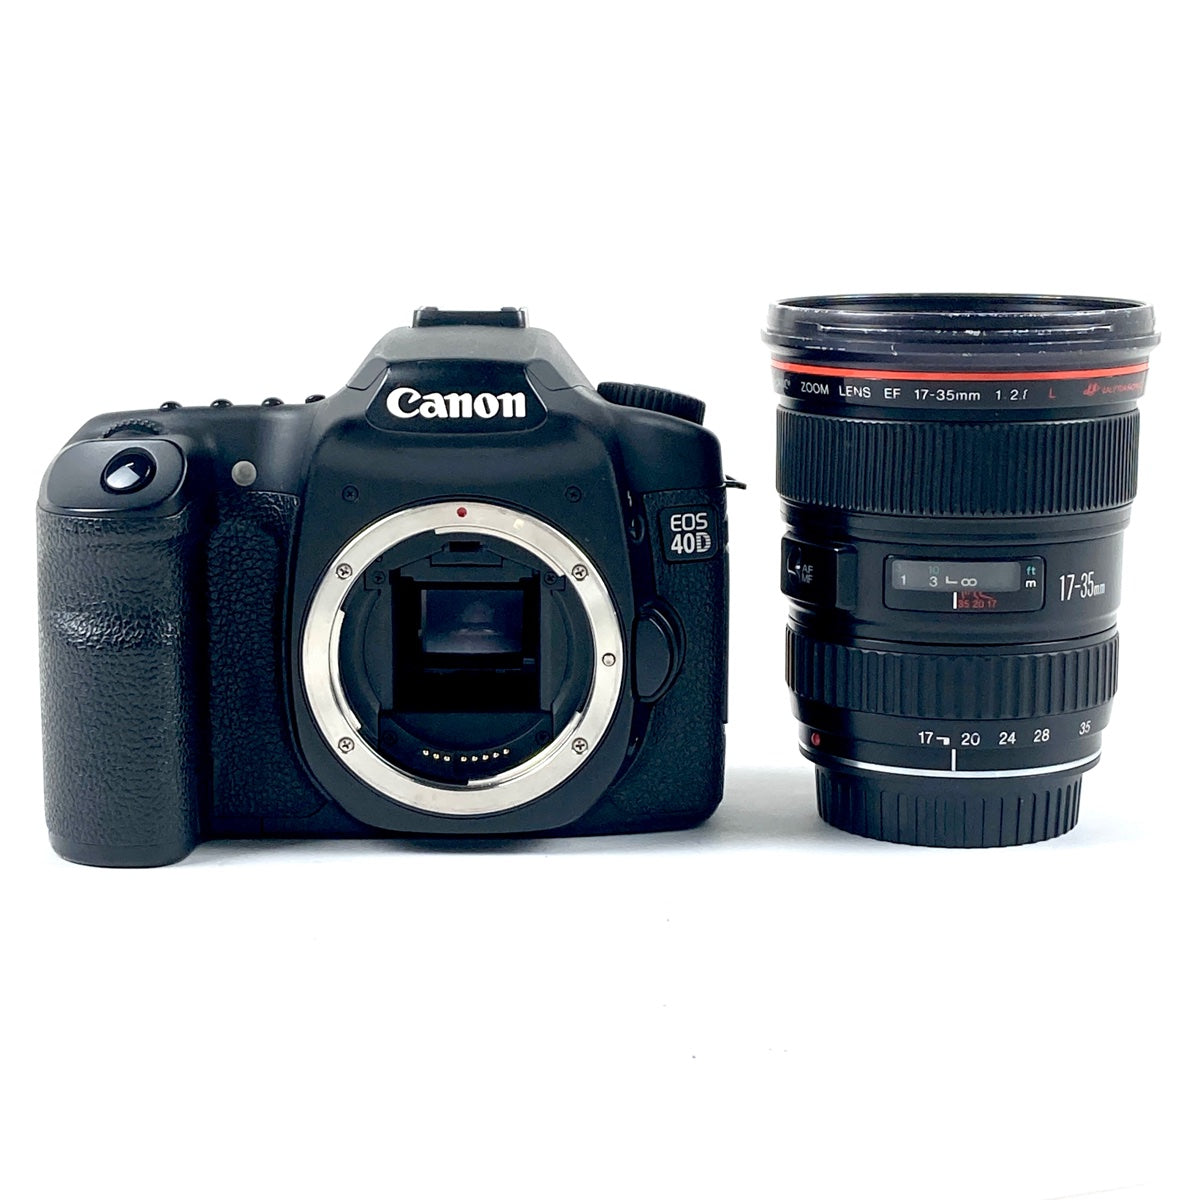 Canon キヤノン EOS 40D デジタル一眼レフカメラ - デジタル一眼カメラ